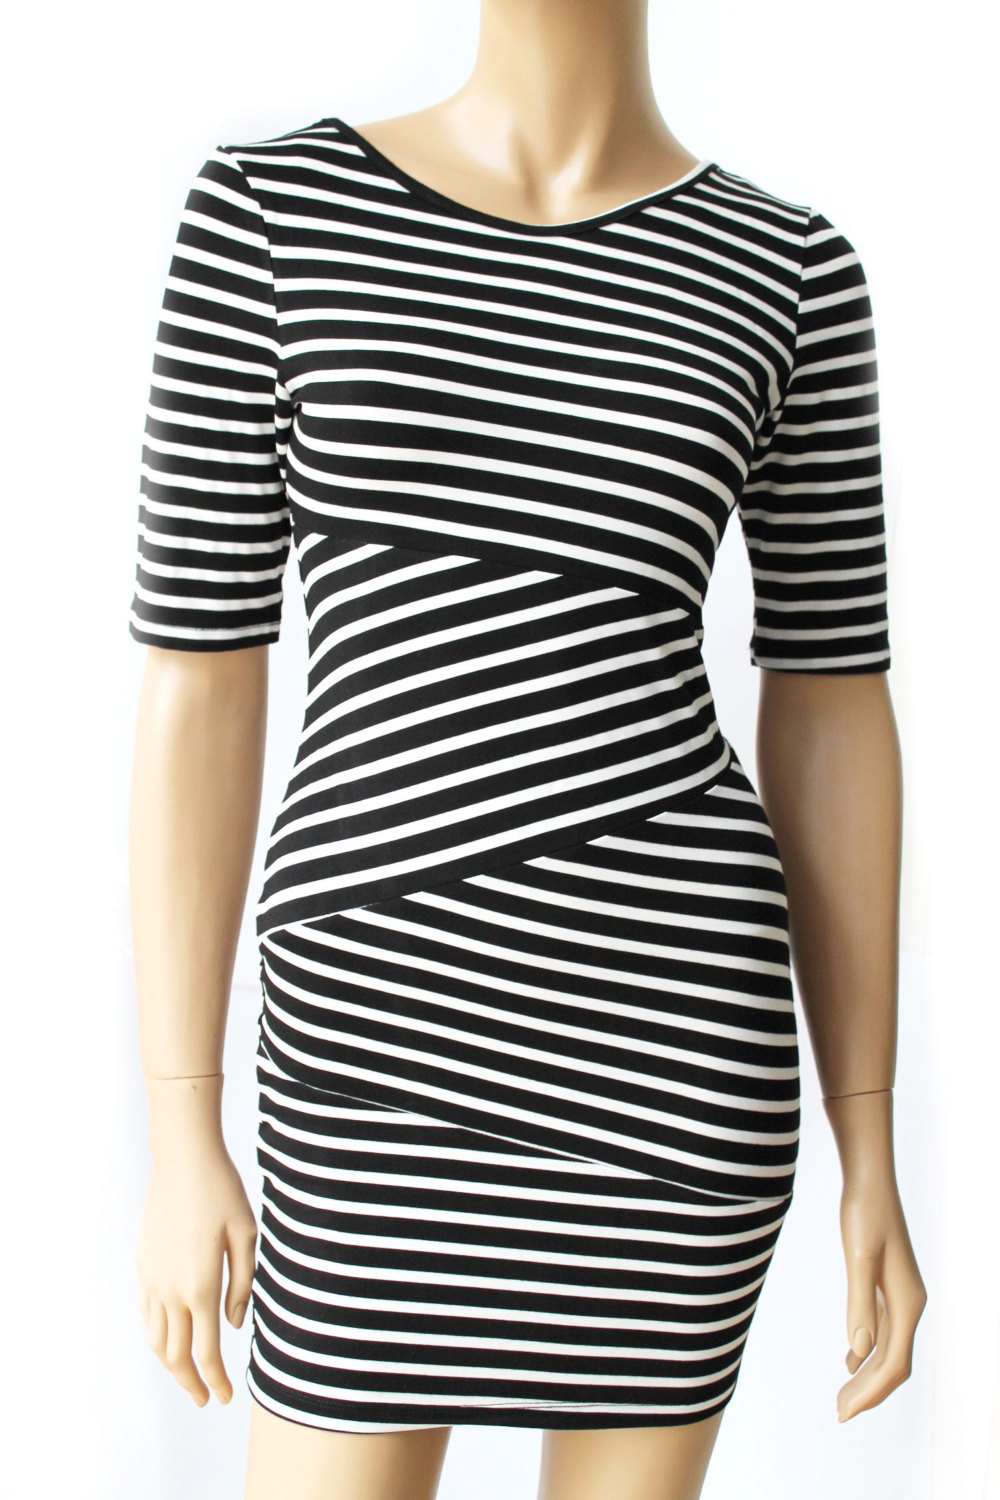 Black and white /cotton/ women's Striped casual /mini dress/ tunic